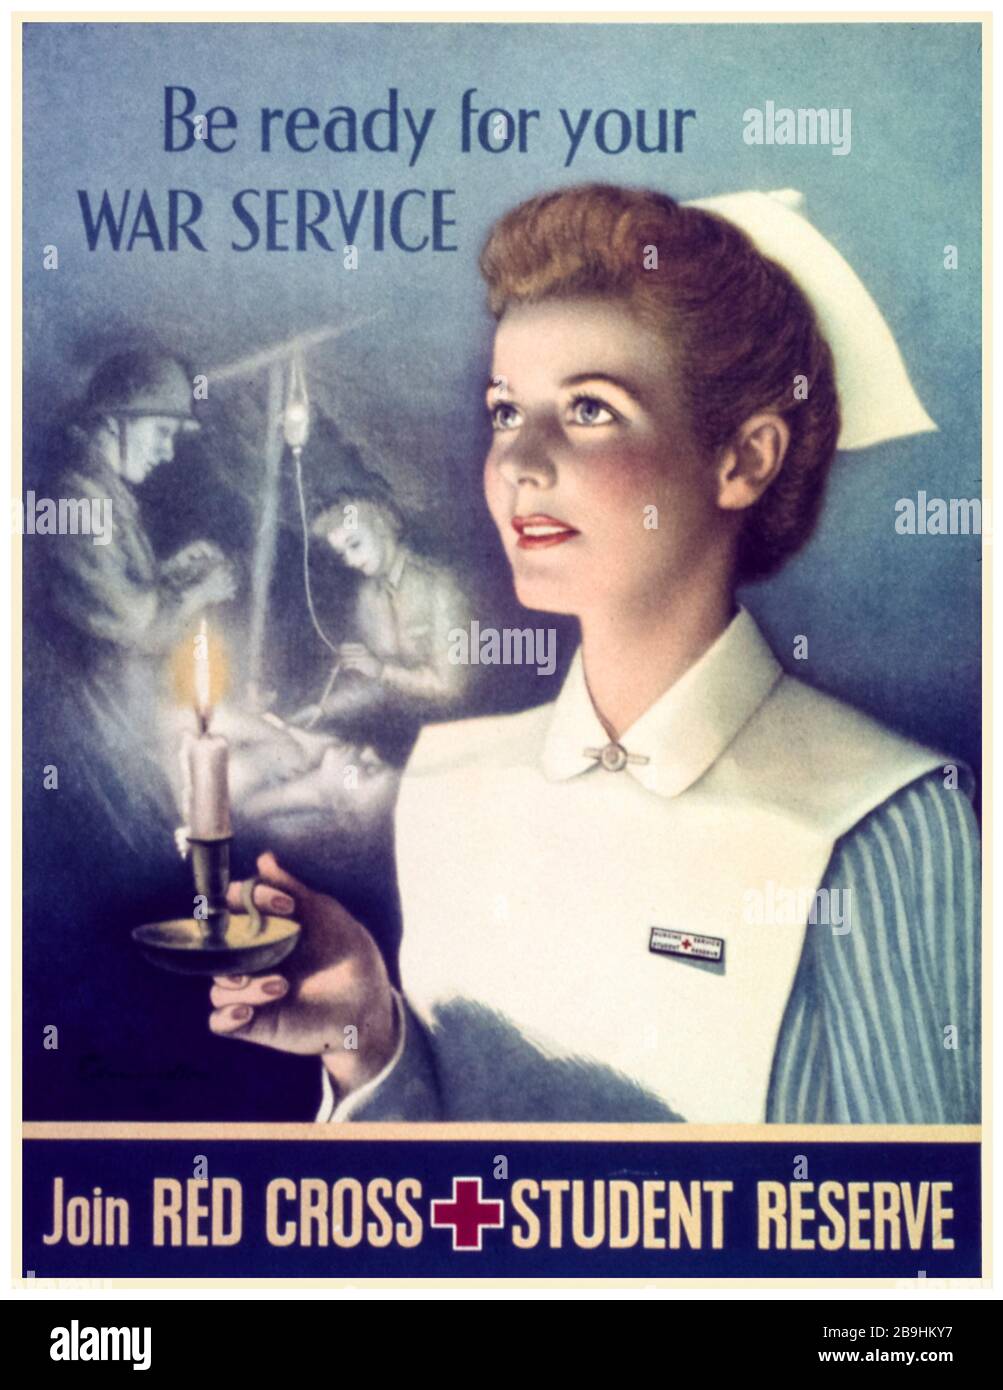 Affiche américaine de recrutement des infirmières de la seconde Guerre mondiale, préparez-vous à votre service de guerre, rejoignez la réserve étudiante de la Croix-Rouge, 1941-1945 Banque D'Images